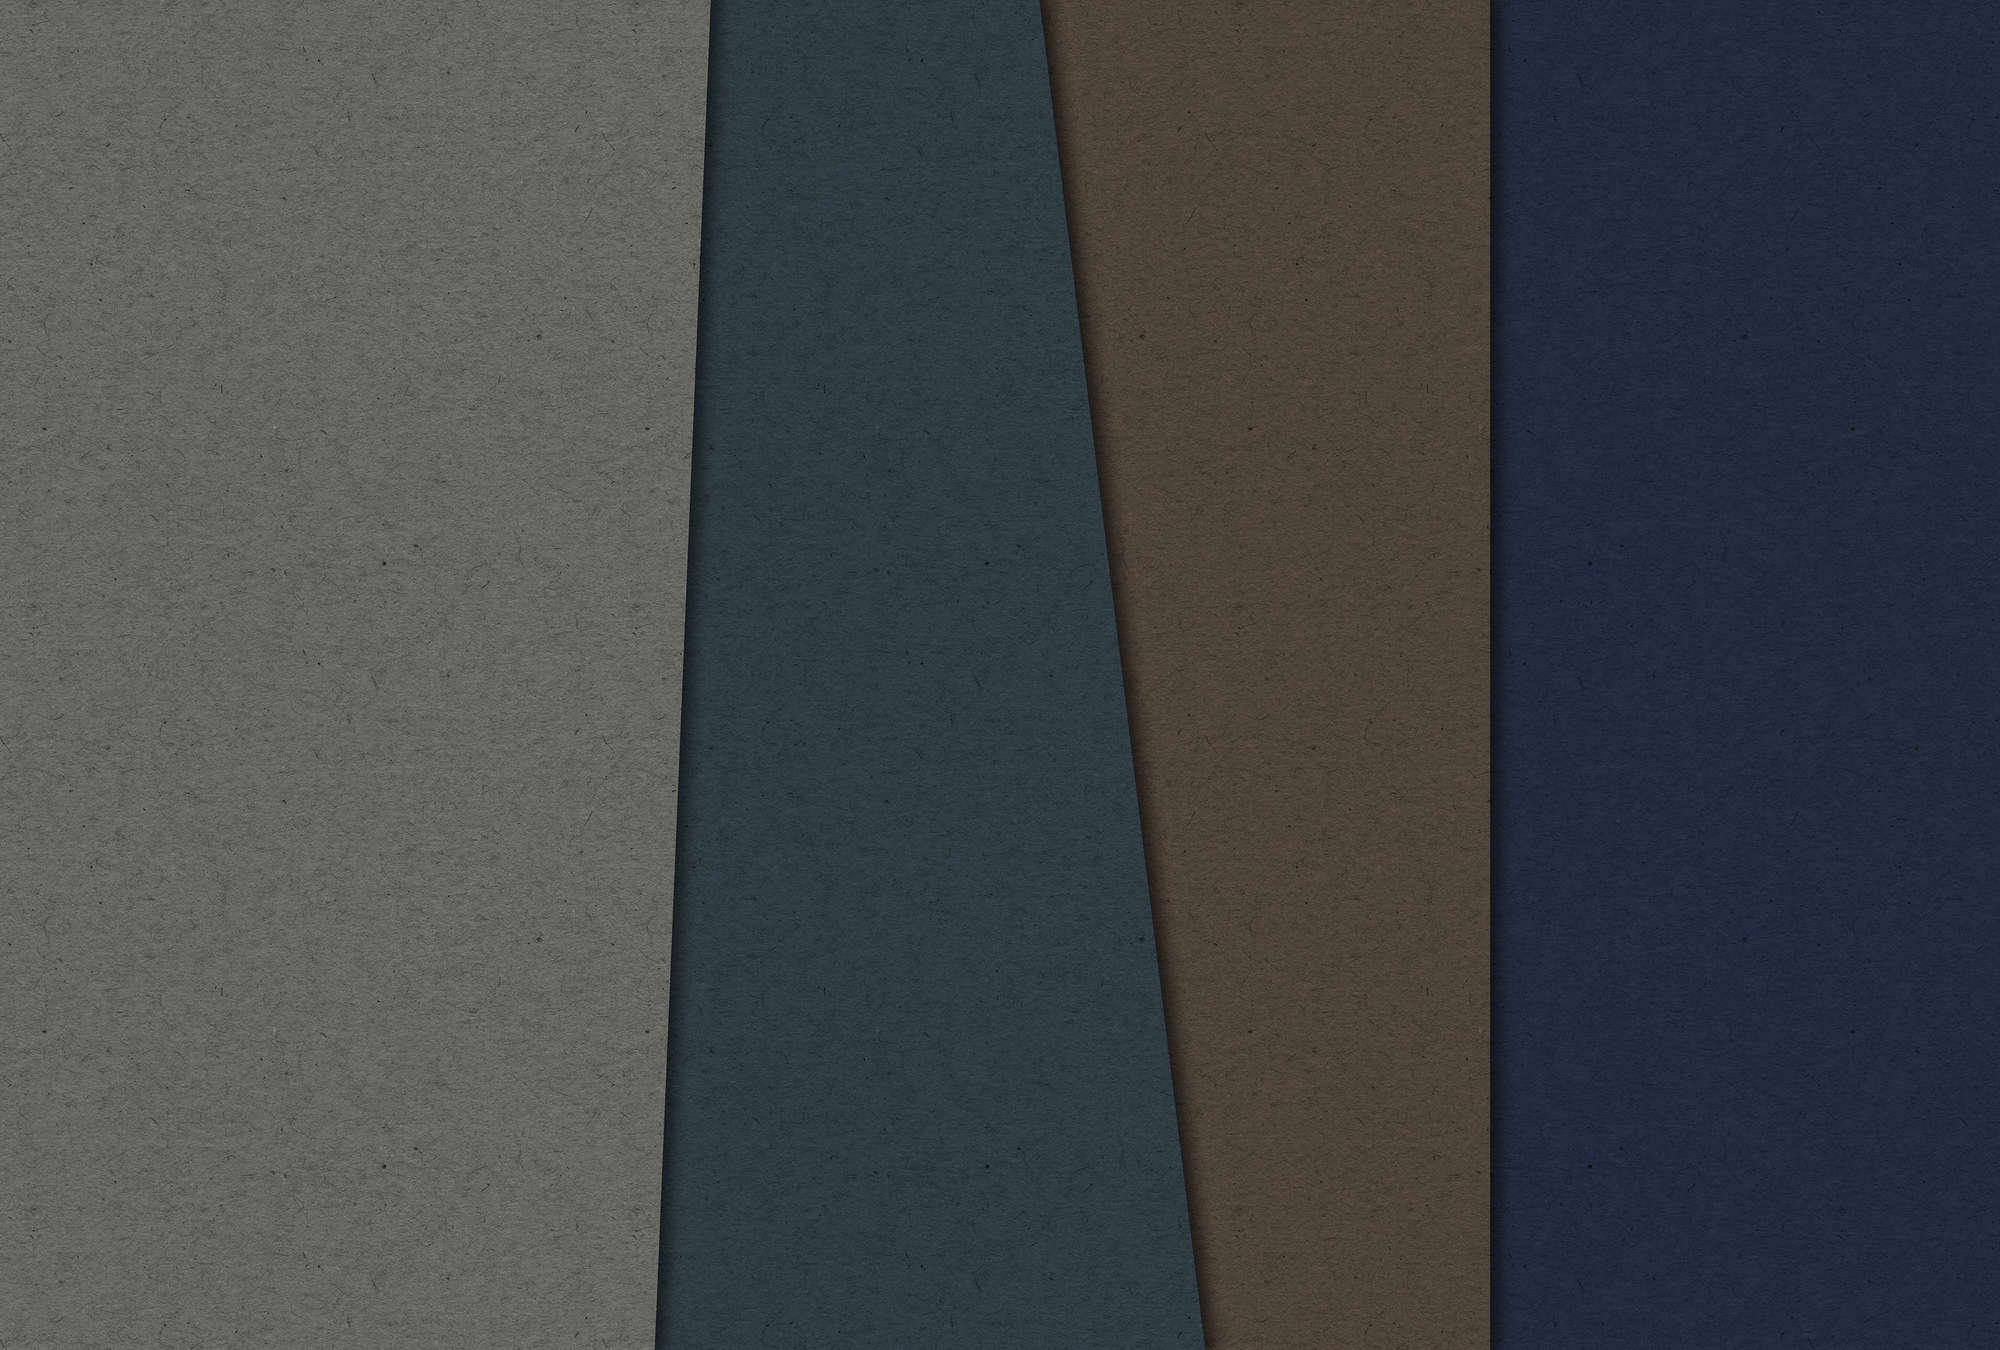             Layered Cardboard 2 - Fototapete in Pappe Struktur mit dunklen Farbfeldern – Blau, Braun | Mattes Glattvlies
        